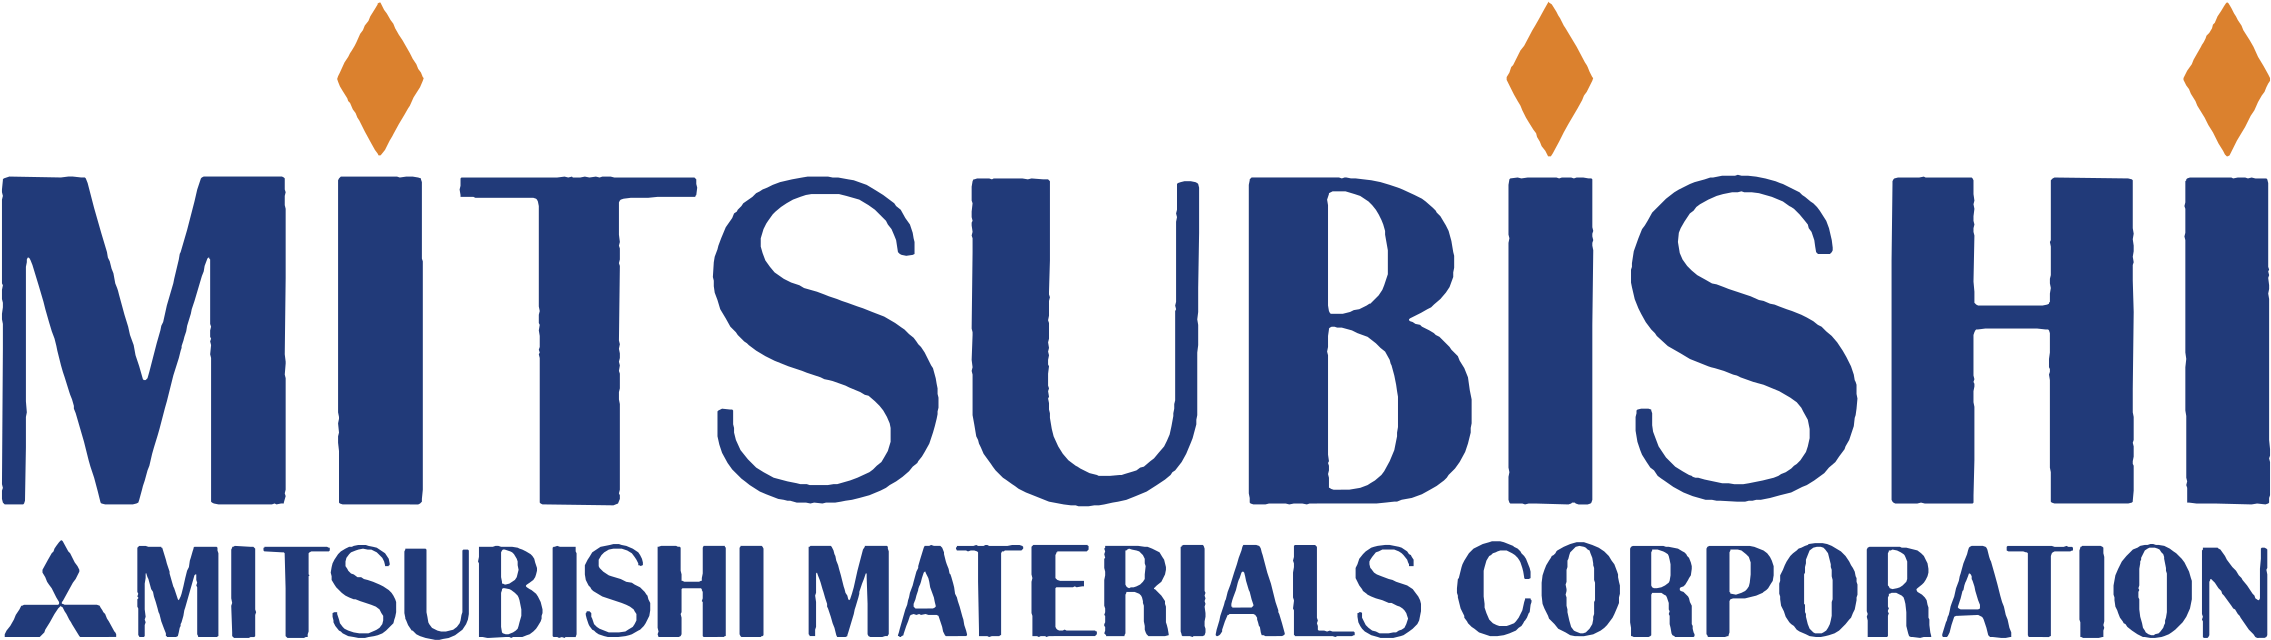 Mitsubishi Materials Corporation Logo PNG image